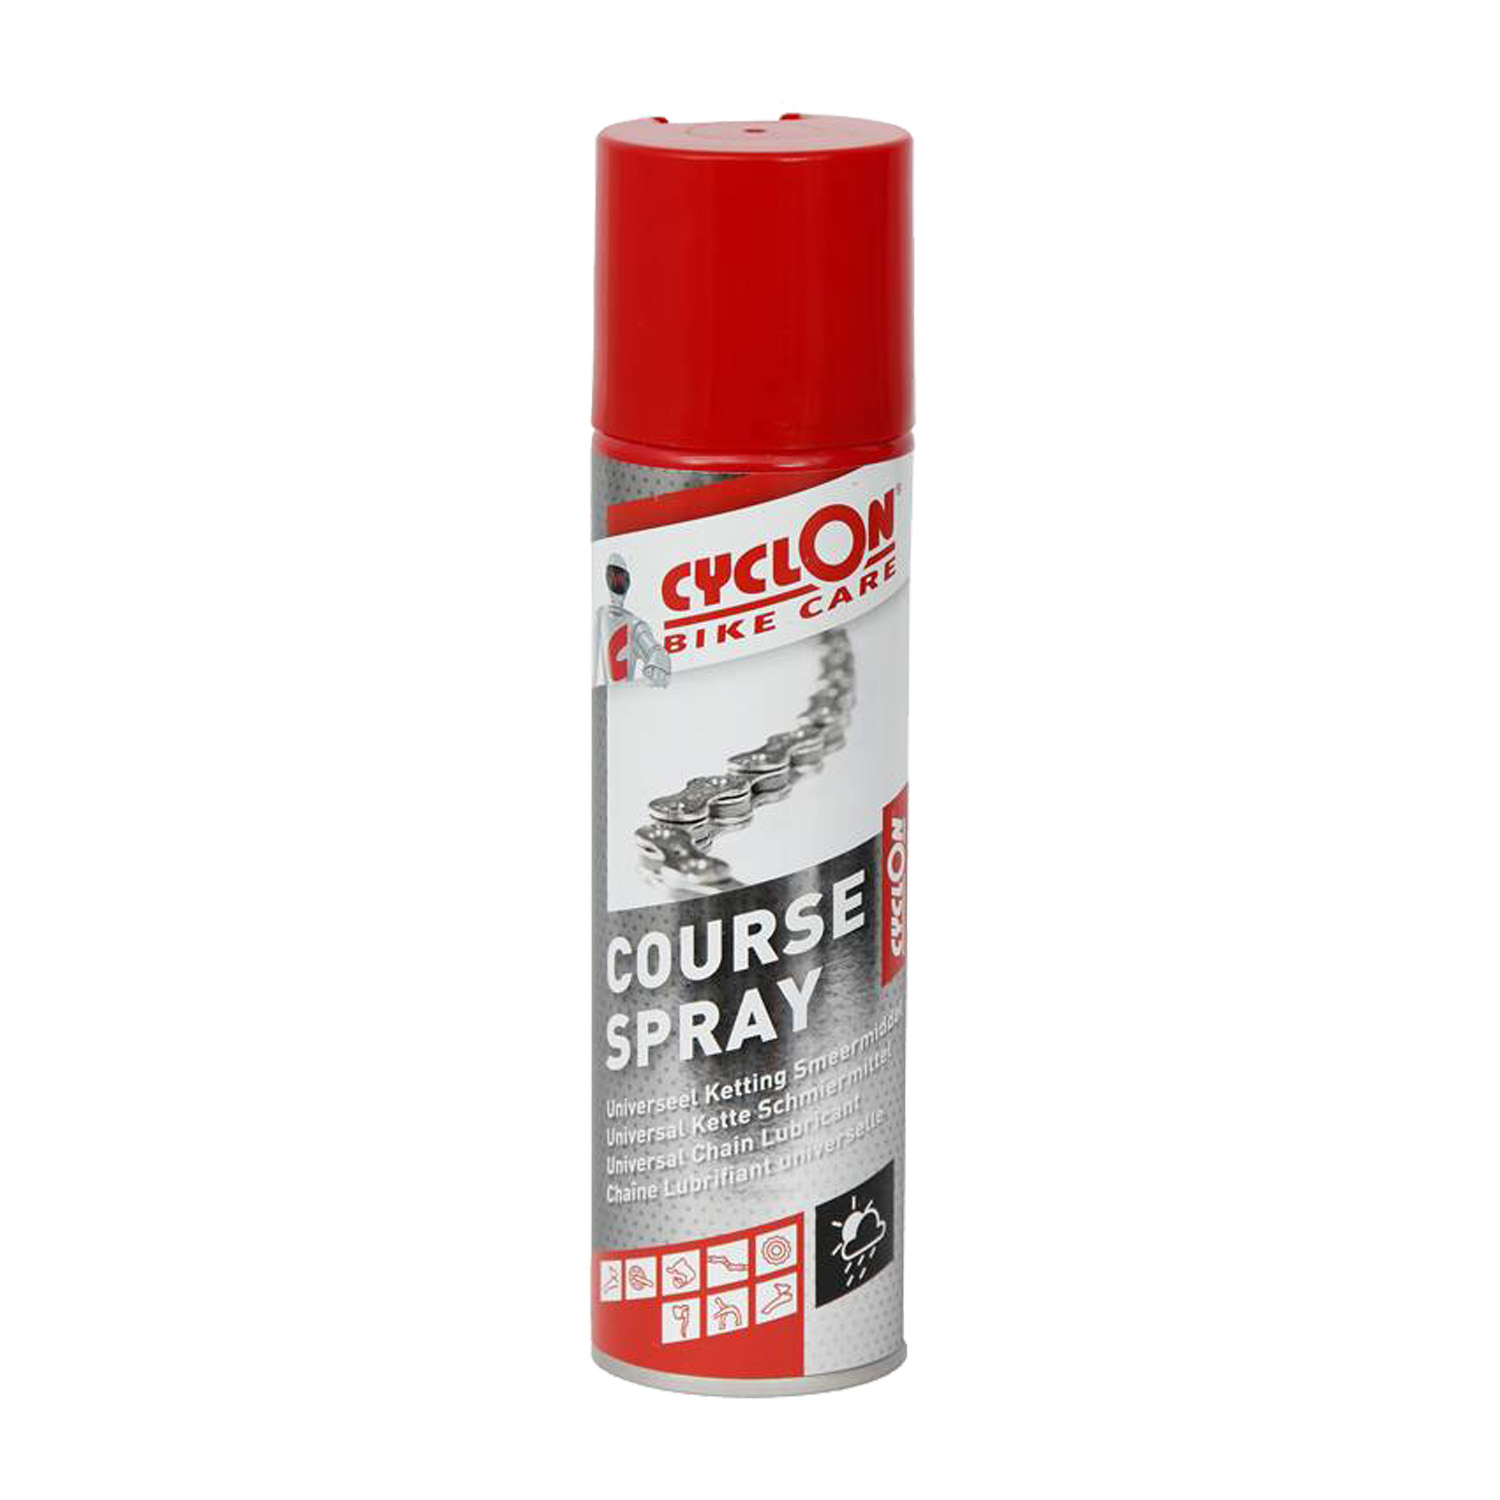 Cyclon Course spray